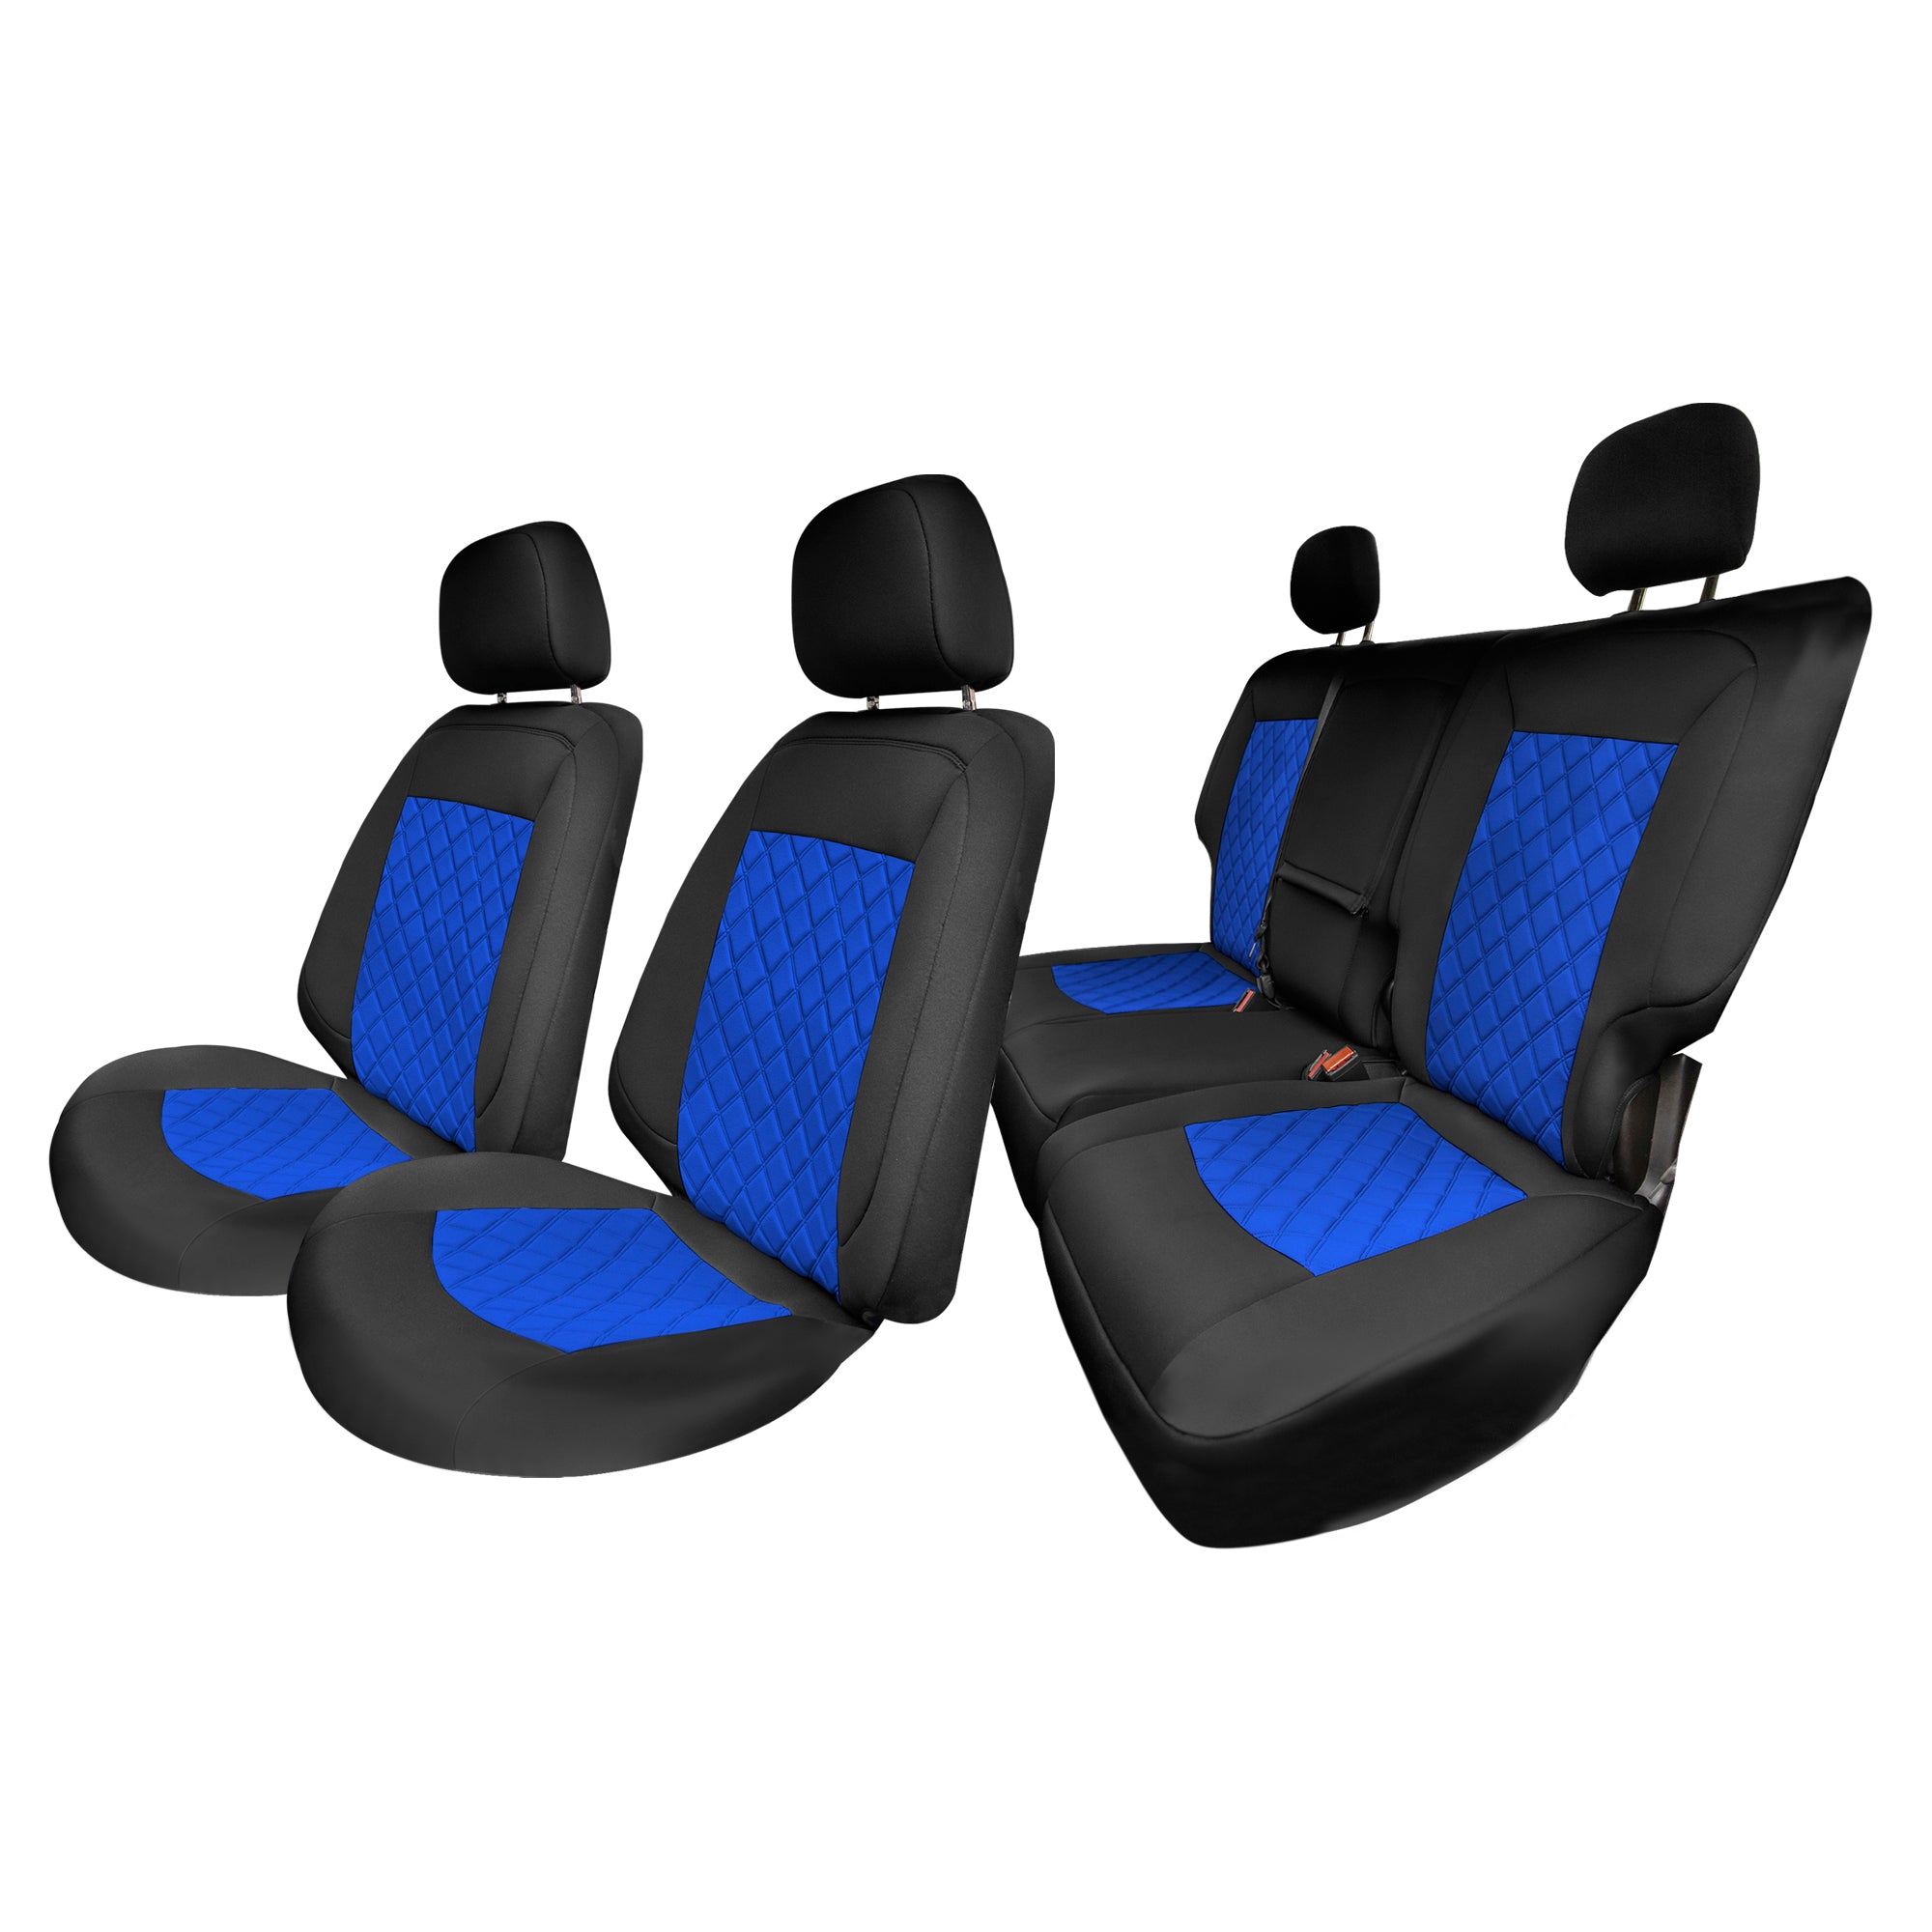 Chevy Equinox 2018-2021 - Full Set Seat Covers - Blue Neoprene